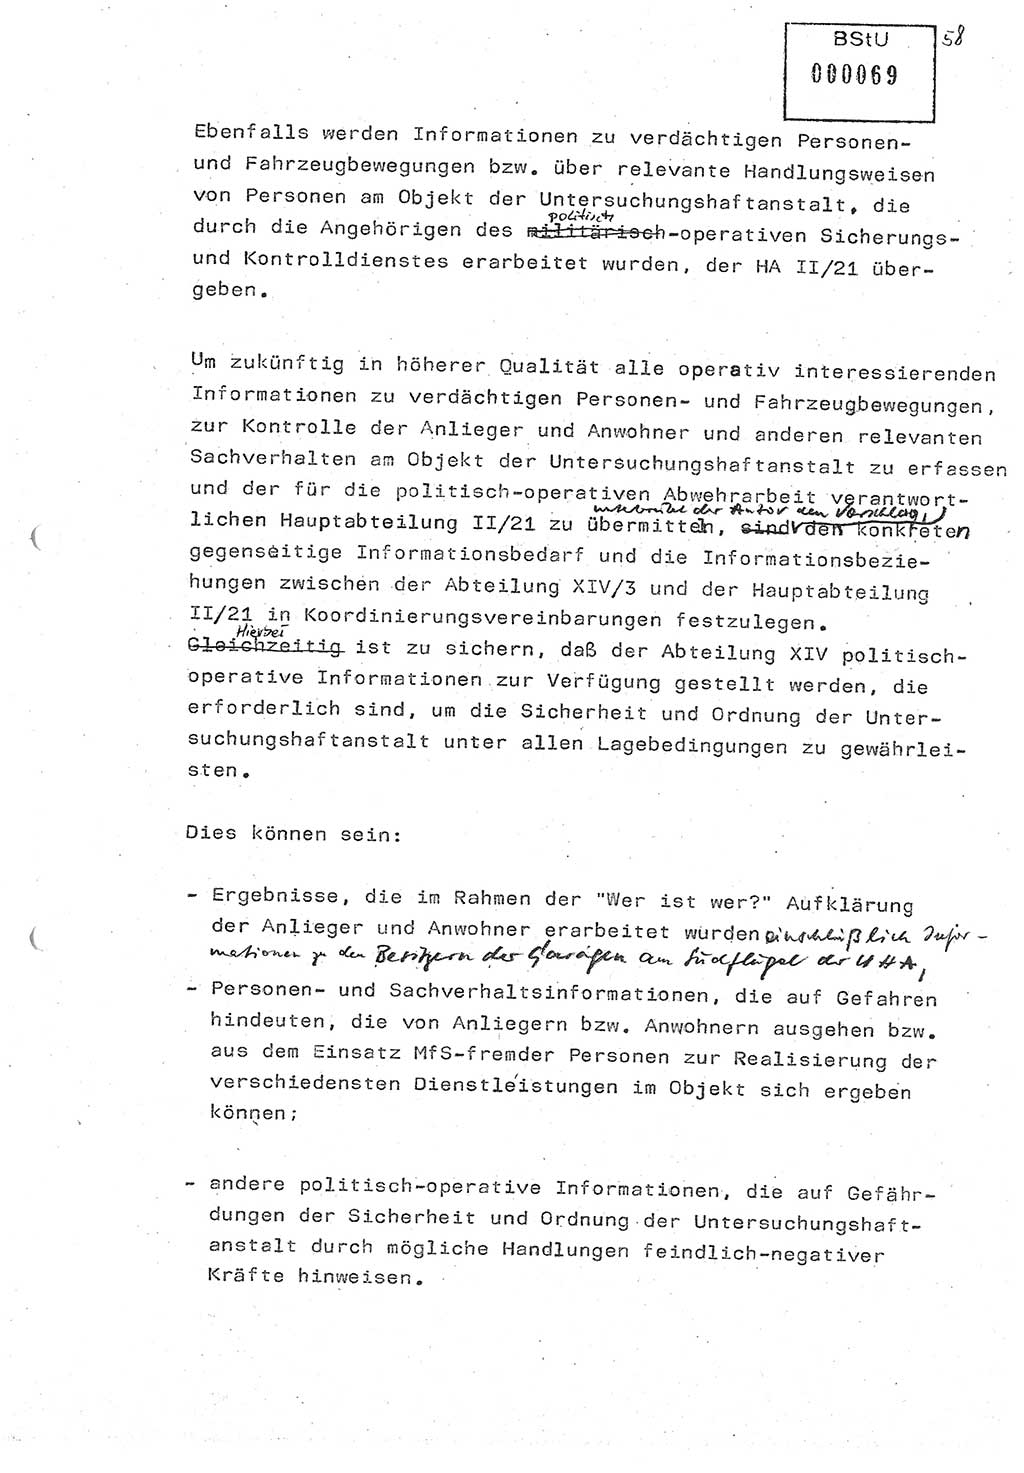 Diplomarbeit (Entwurf) Oberleutnant Peter Parke (Abt. ⅩⅣ), Ministerium für Staatssicherheit (MfS) [Deutsche Demokratische Republik (DDR)], Juristische Hochschule (JHS), Geheime Verschlußsache (GVS) o001-98/86, Potsdam 1986, Seite 69 (Dipl.-Arb. MfS DDR JHS GVS o001-98/86 1986, S. 69)